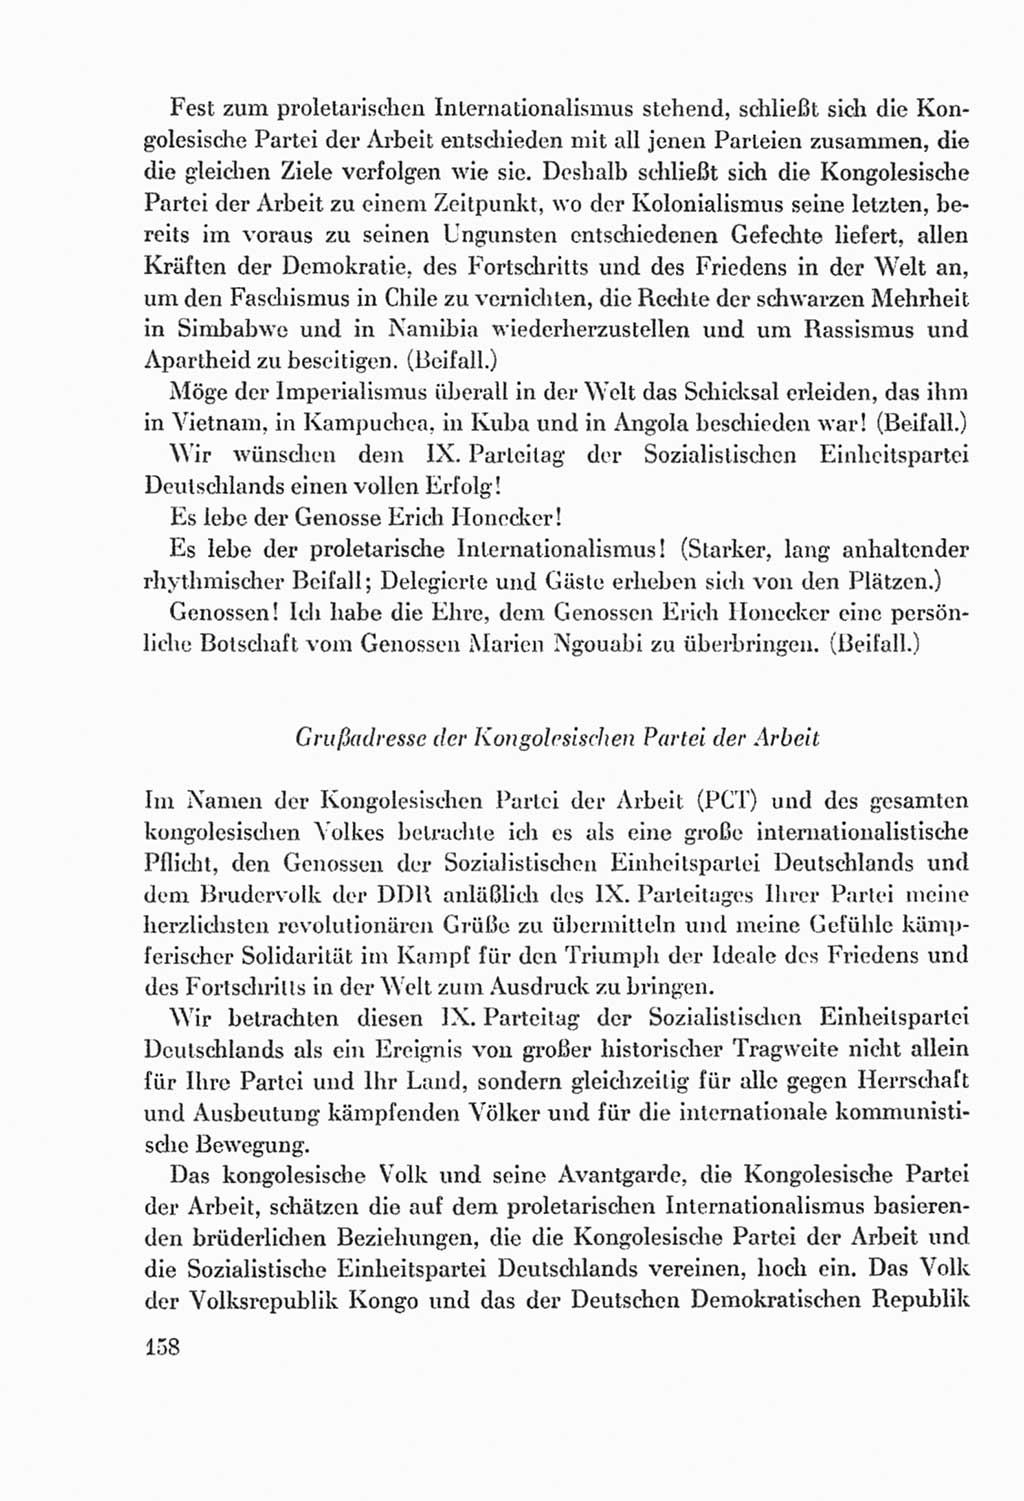 Protokoll der Verhandlungen des Ⅸ. Parteitages der Sozialistischen Einheitspartei Deutschlands (SED) [Deutsche Demokratische Republik (DDR)] 1976, Band 2, Seite 158 (Prot. Verh. Ⅸ. PT SED DDR 1976, Bd. 2, S. 158)